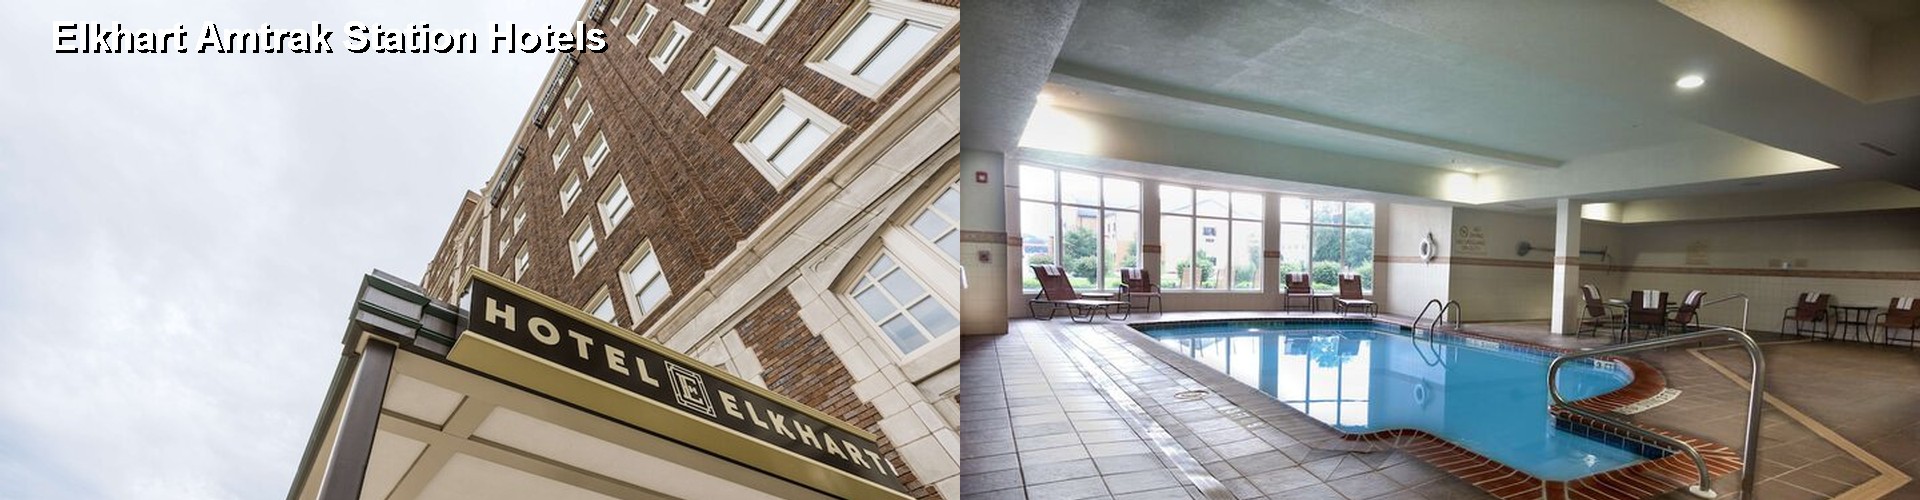 5 Best Hotels near Elkhart Amtrak Station